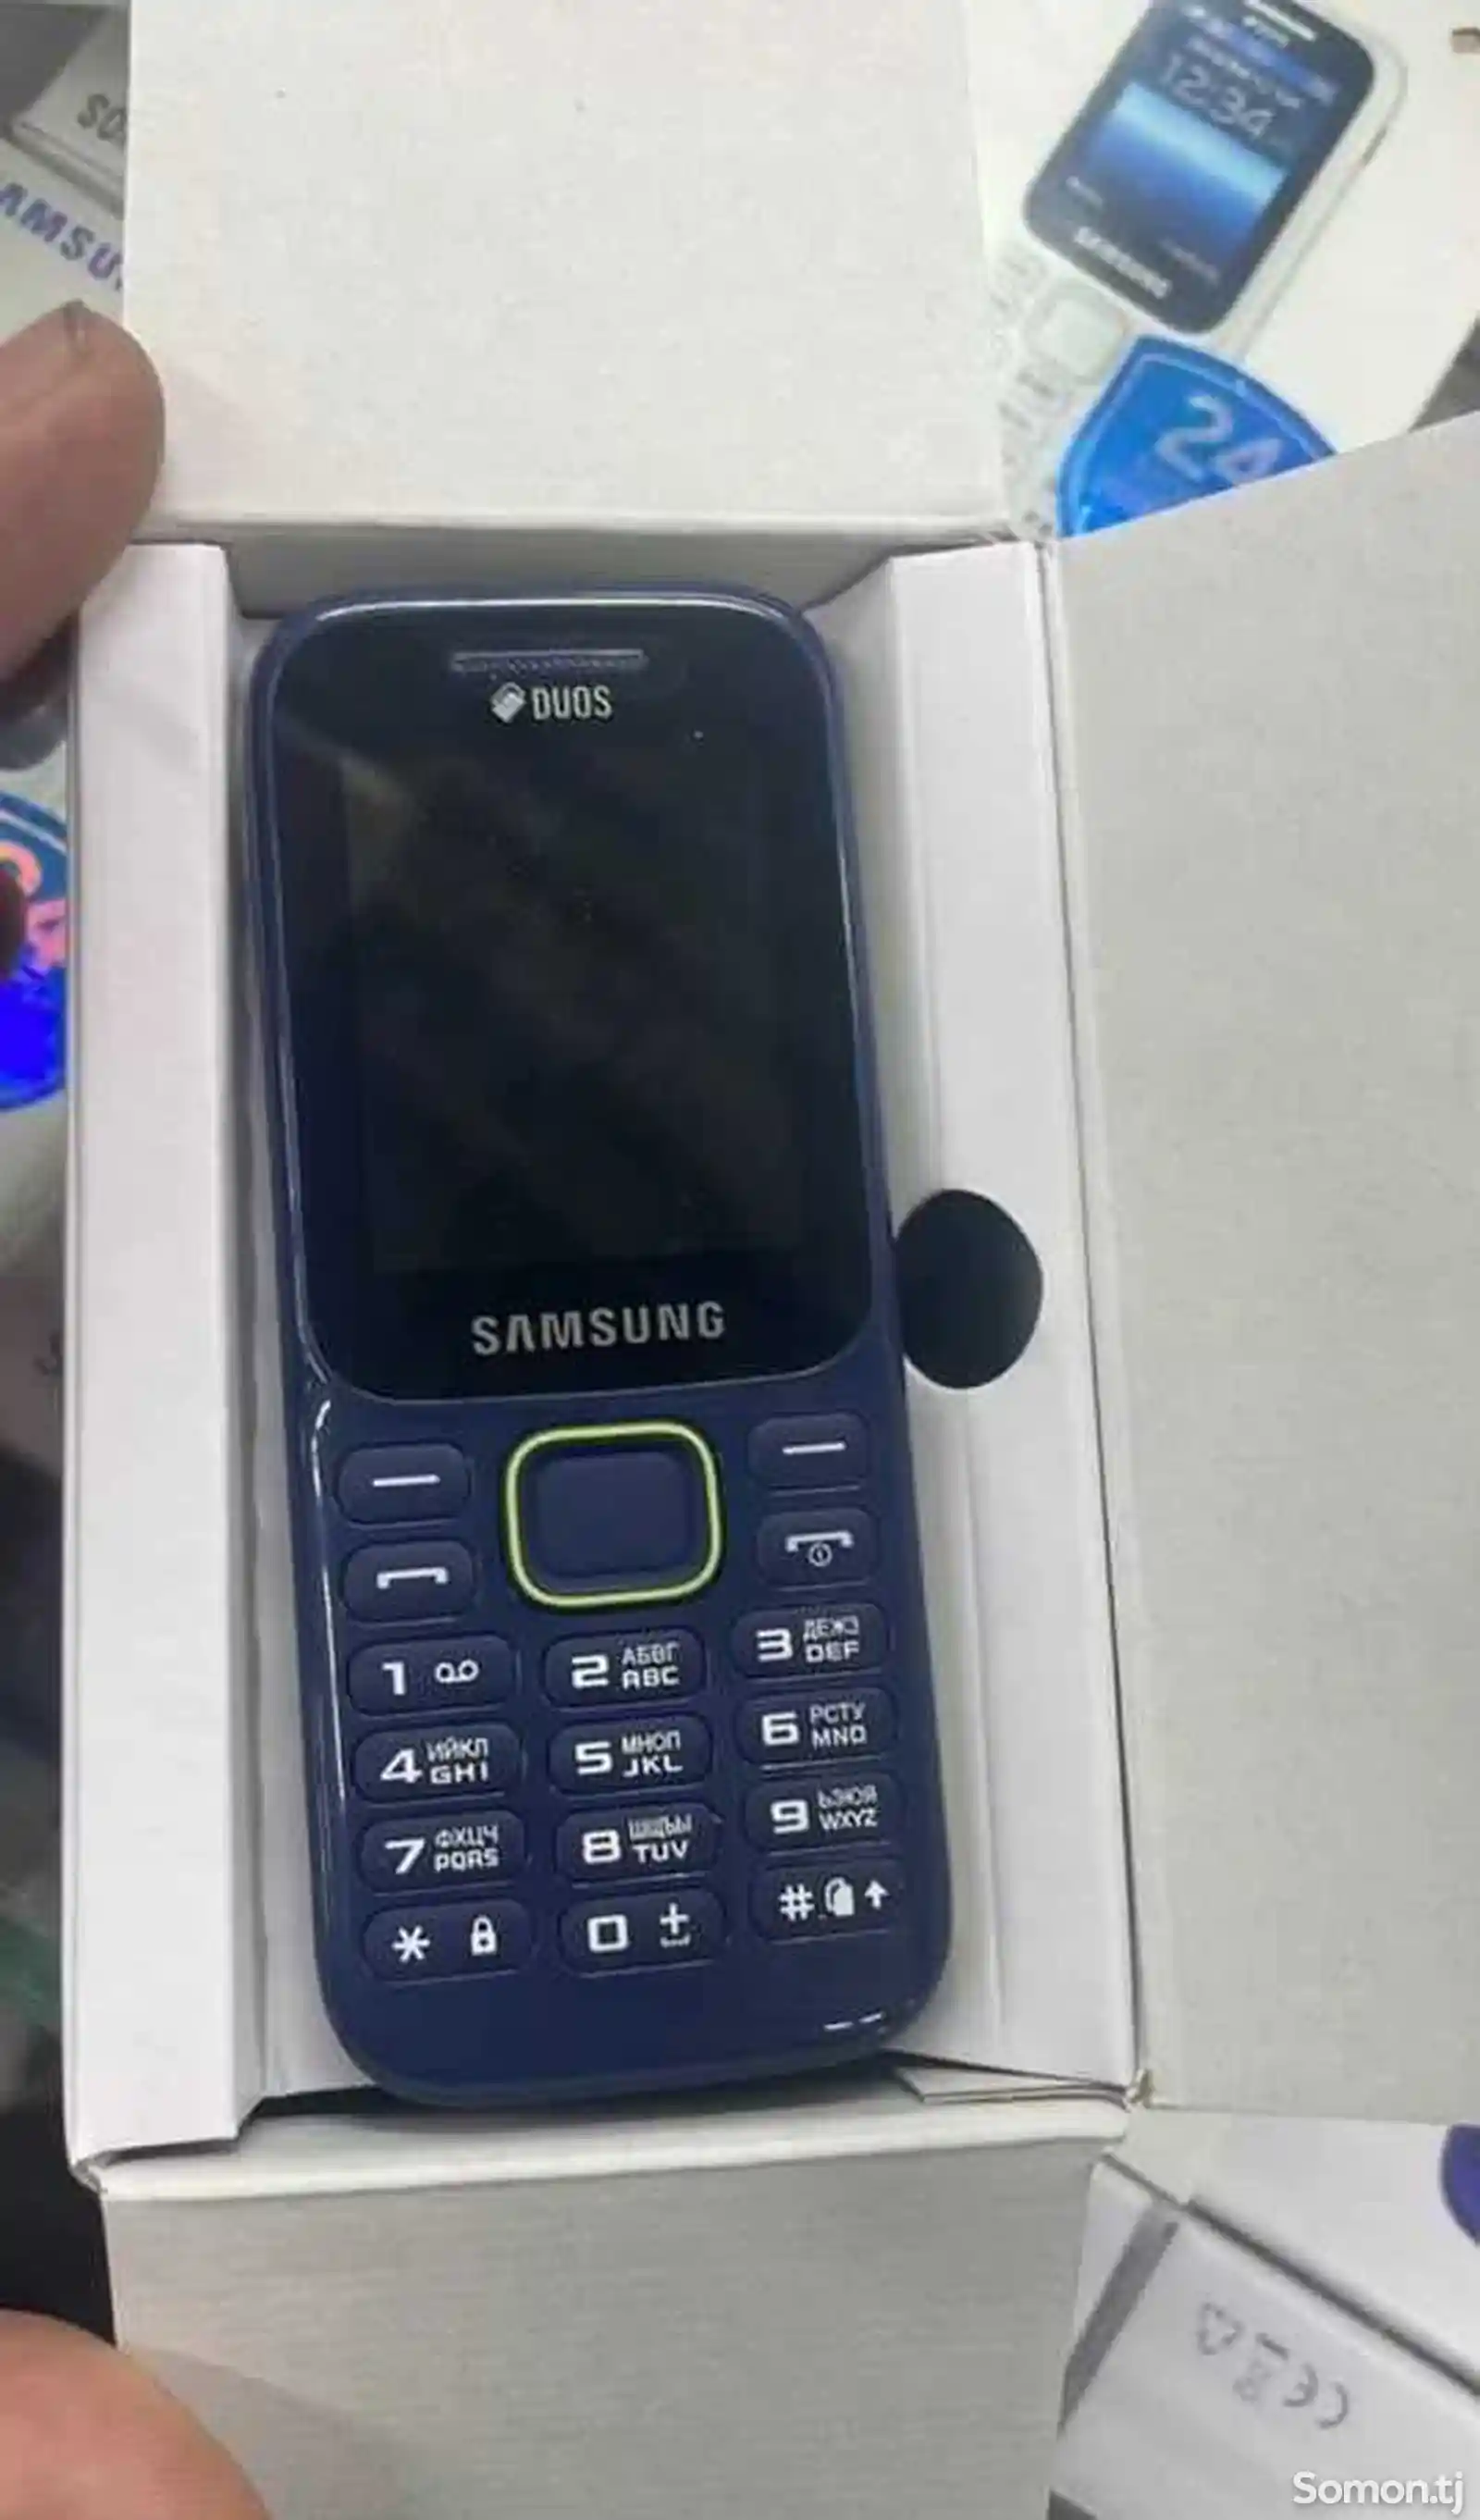 Samsung B310-1